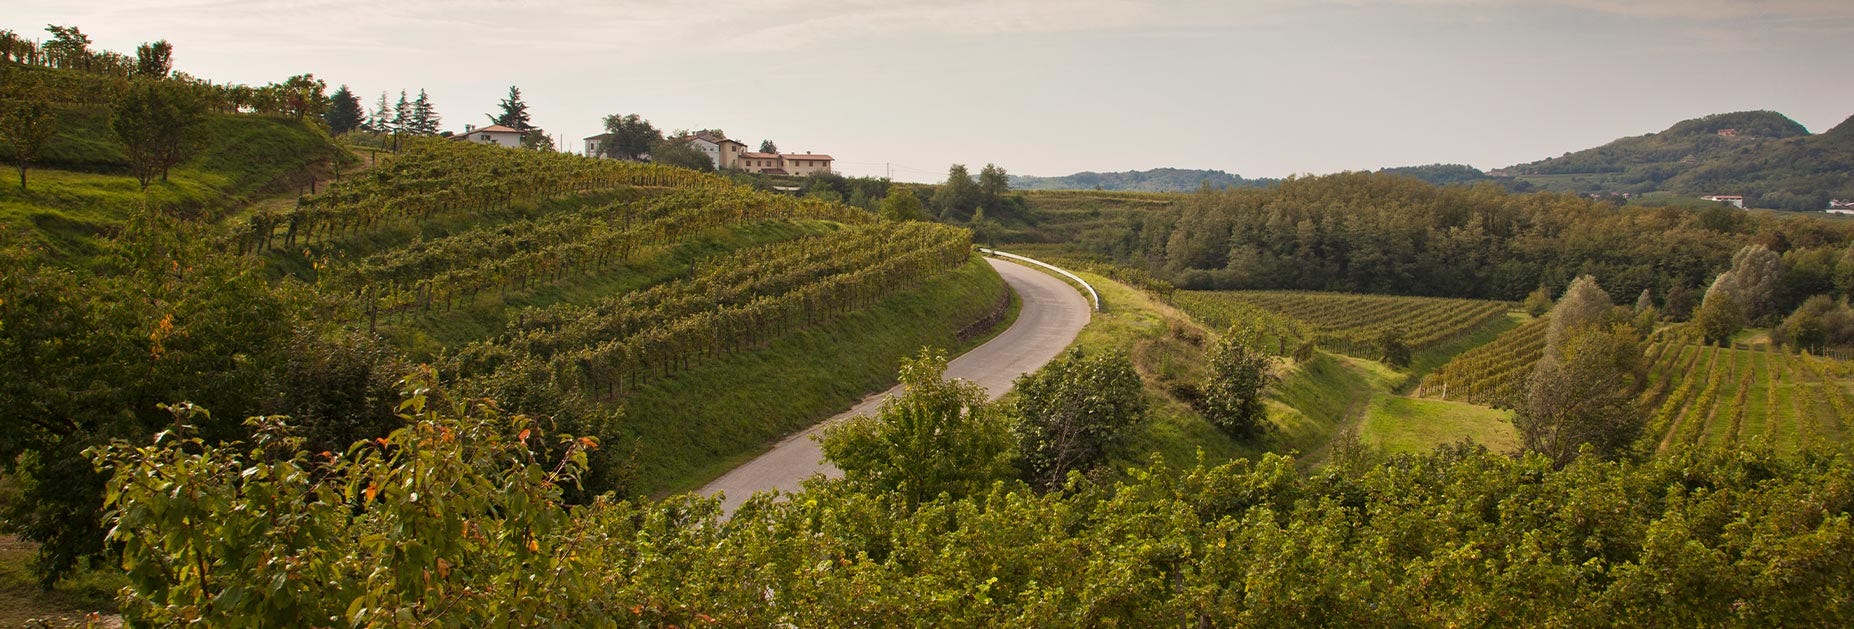 Hügelige Landschaft rund um das Weingut von Eugenio Collavini